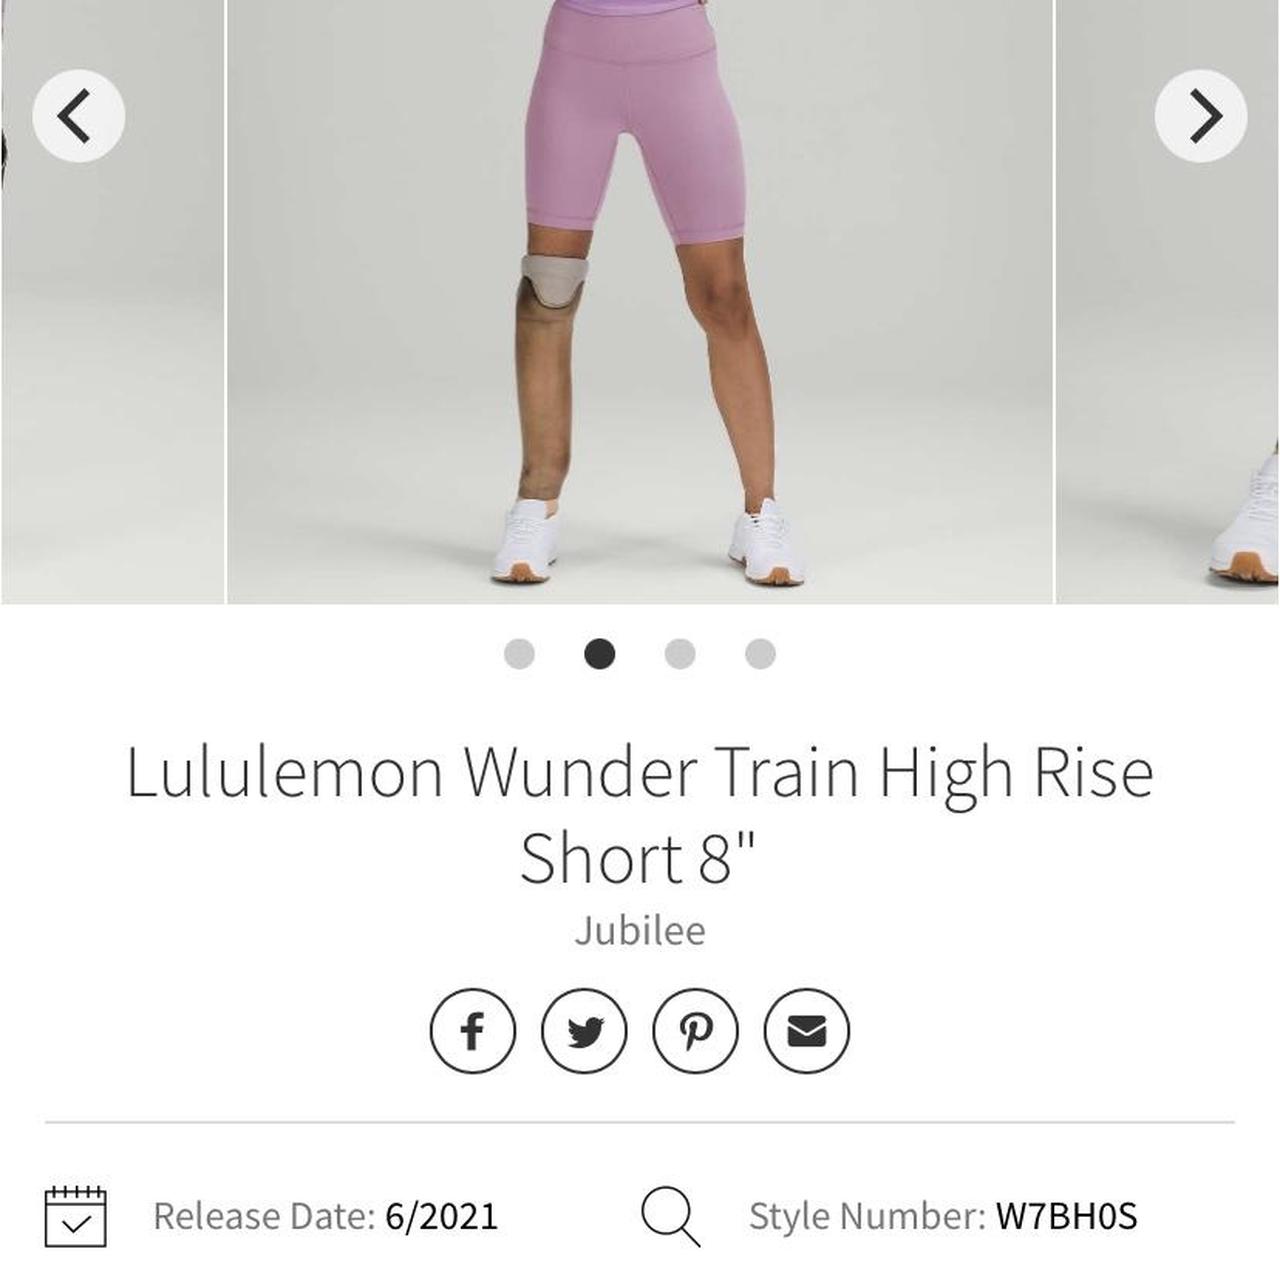 Lululemon Wunder Train High Rise Short 8” Color is: - Depop